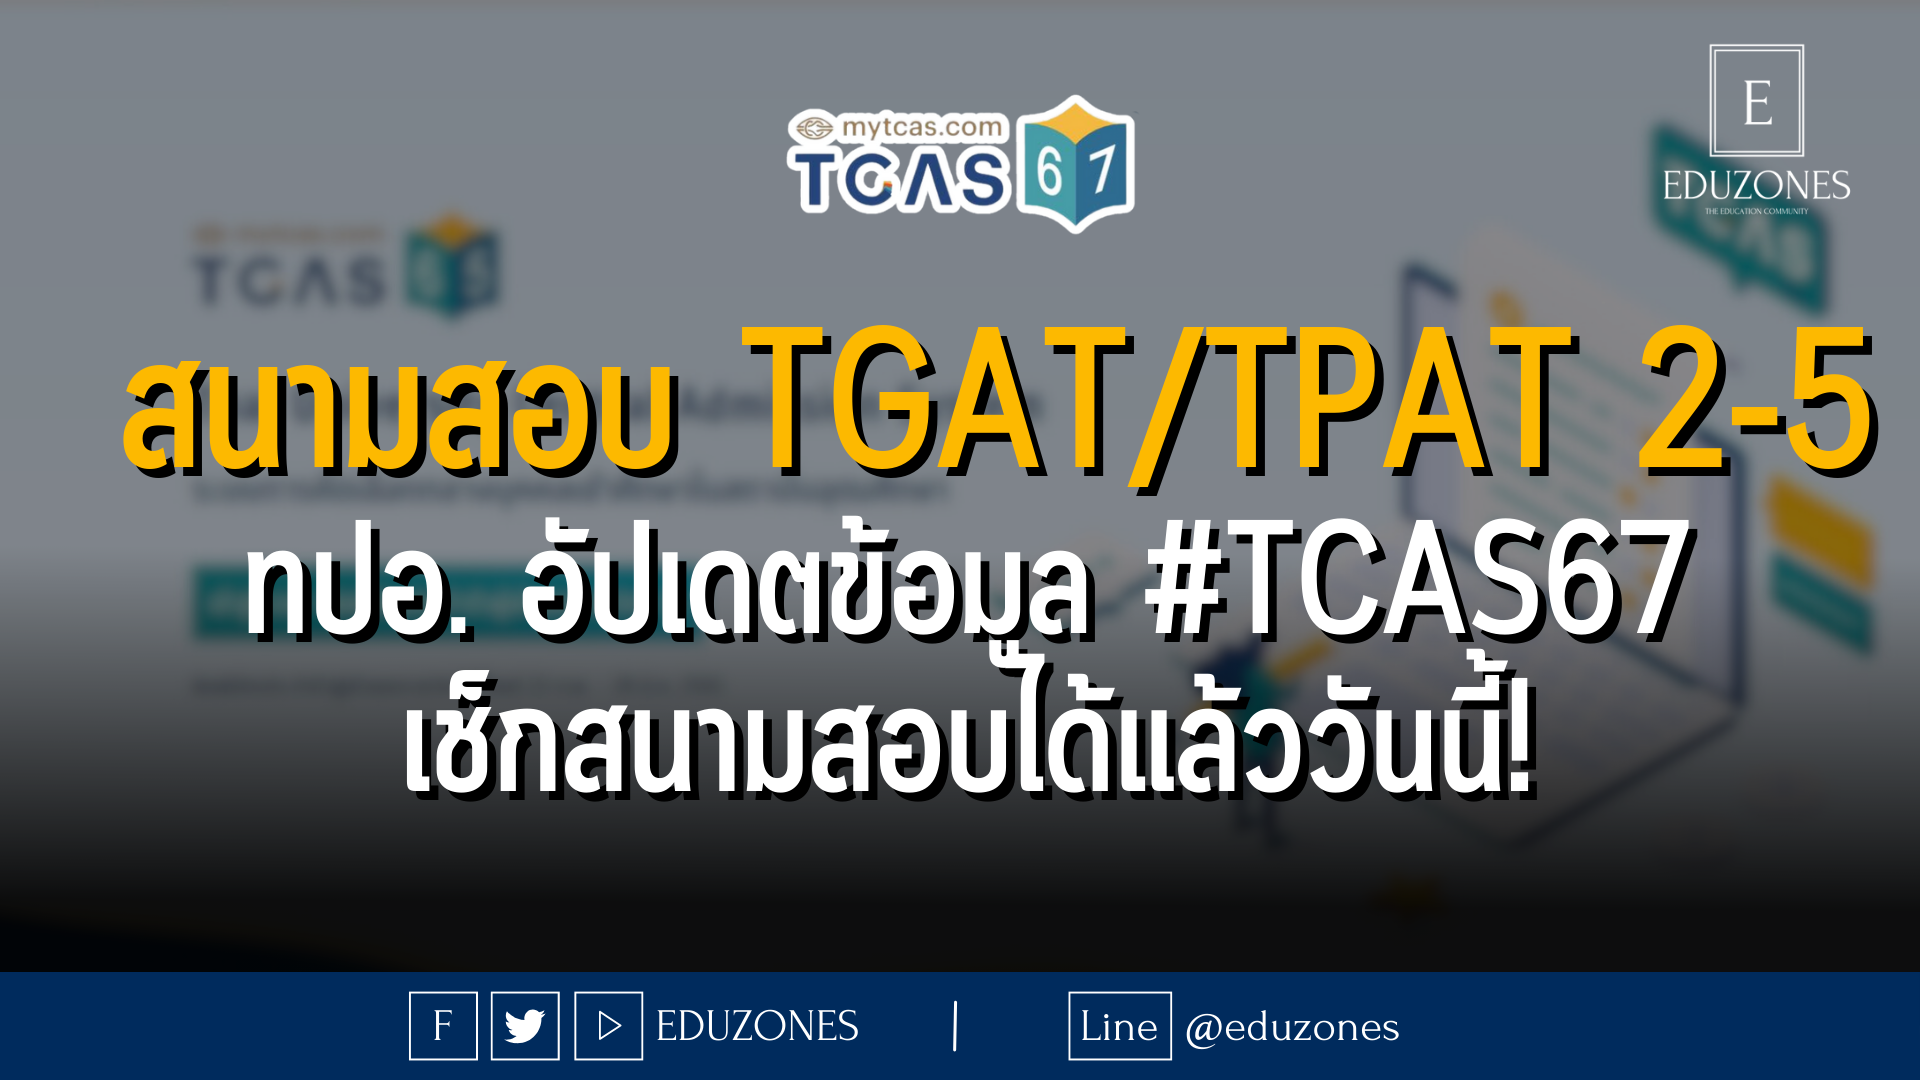  สนามสอบ TGAT/TPAT 2-5 : ทปอ. อัปเดตข้อมูล #TCAS67 เช็กสนามสอบได้แล้ววันนี้!